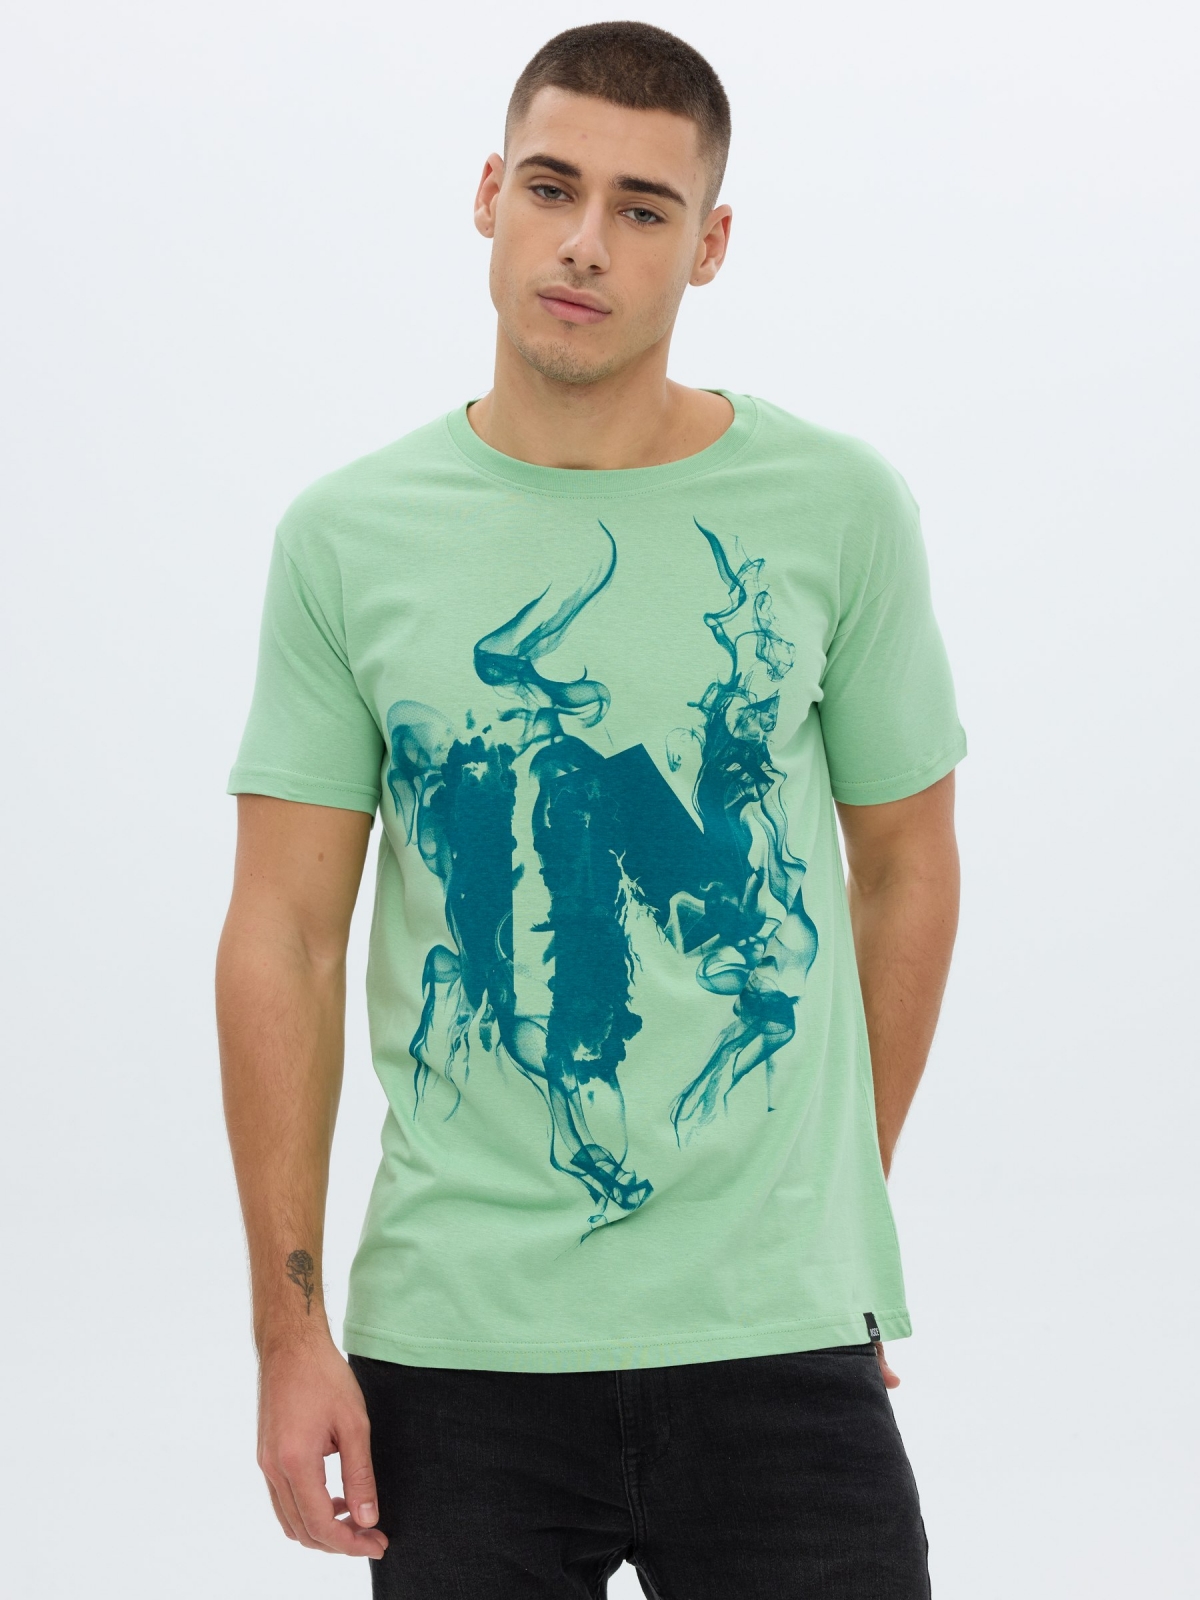 T-shirt impressa INSIDE verde claro vista meia frontal